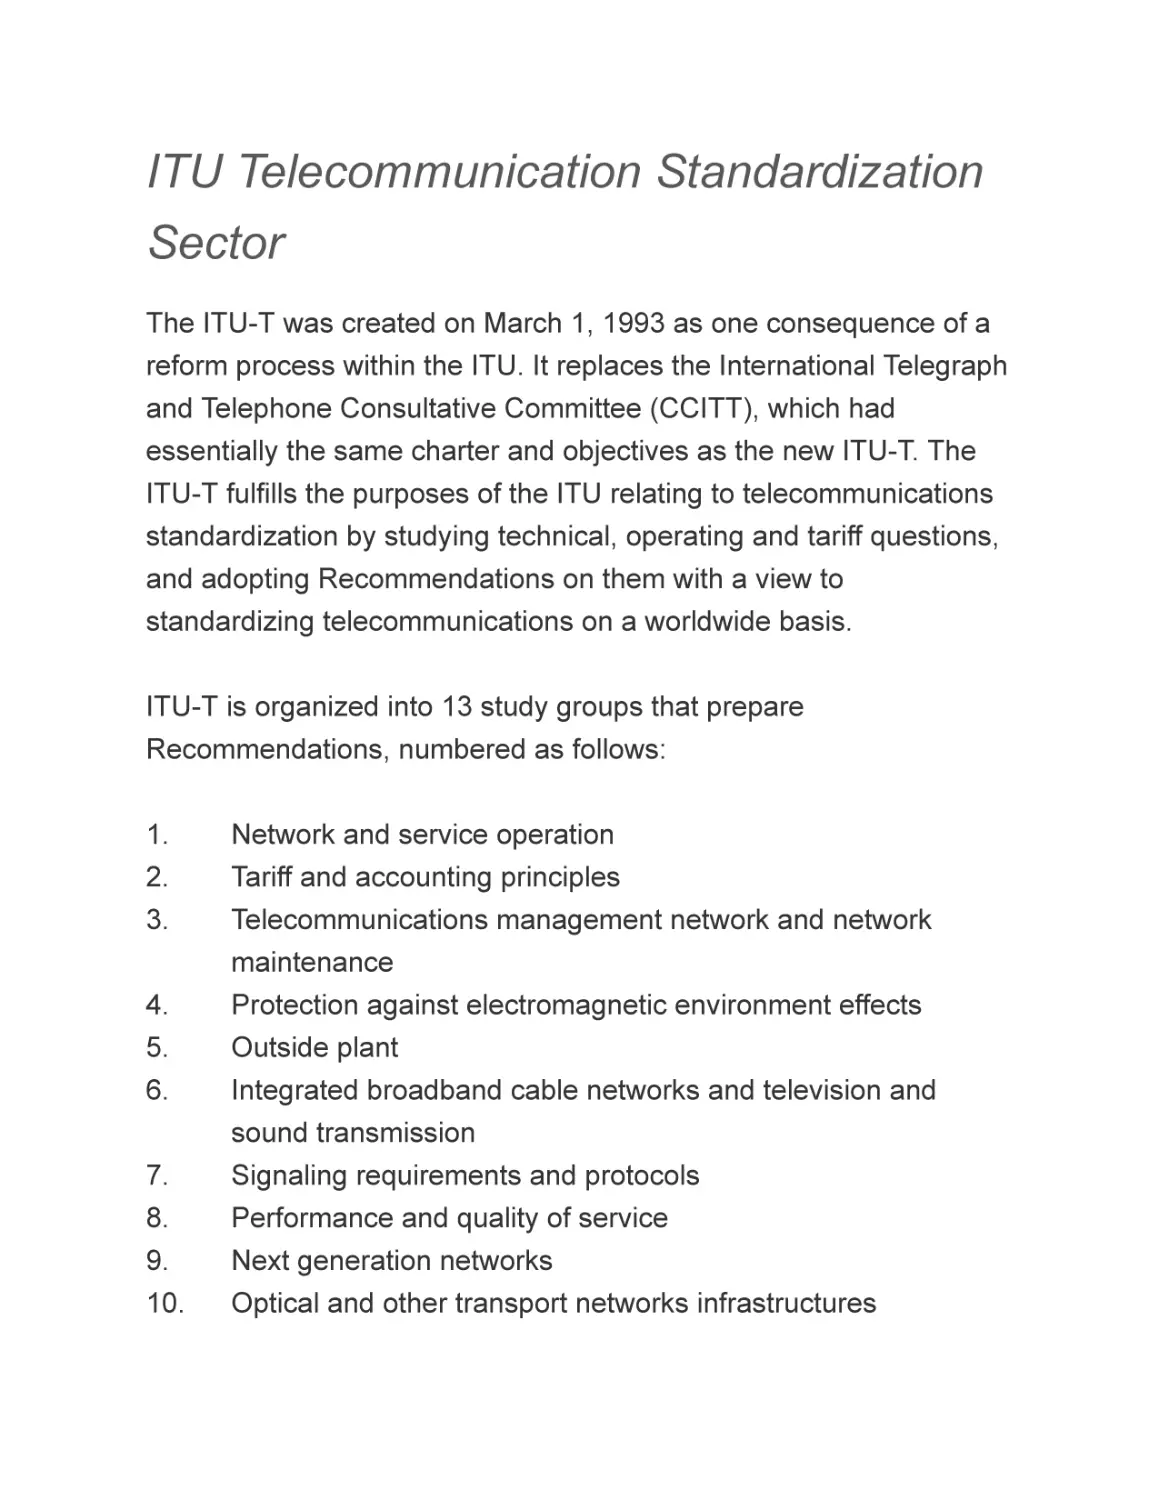 ITU Telecommunication Standardization Sector